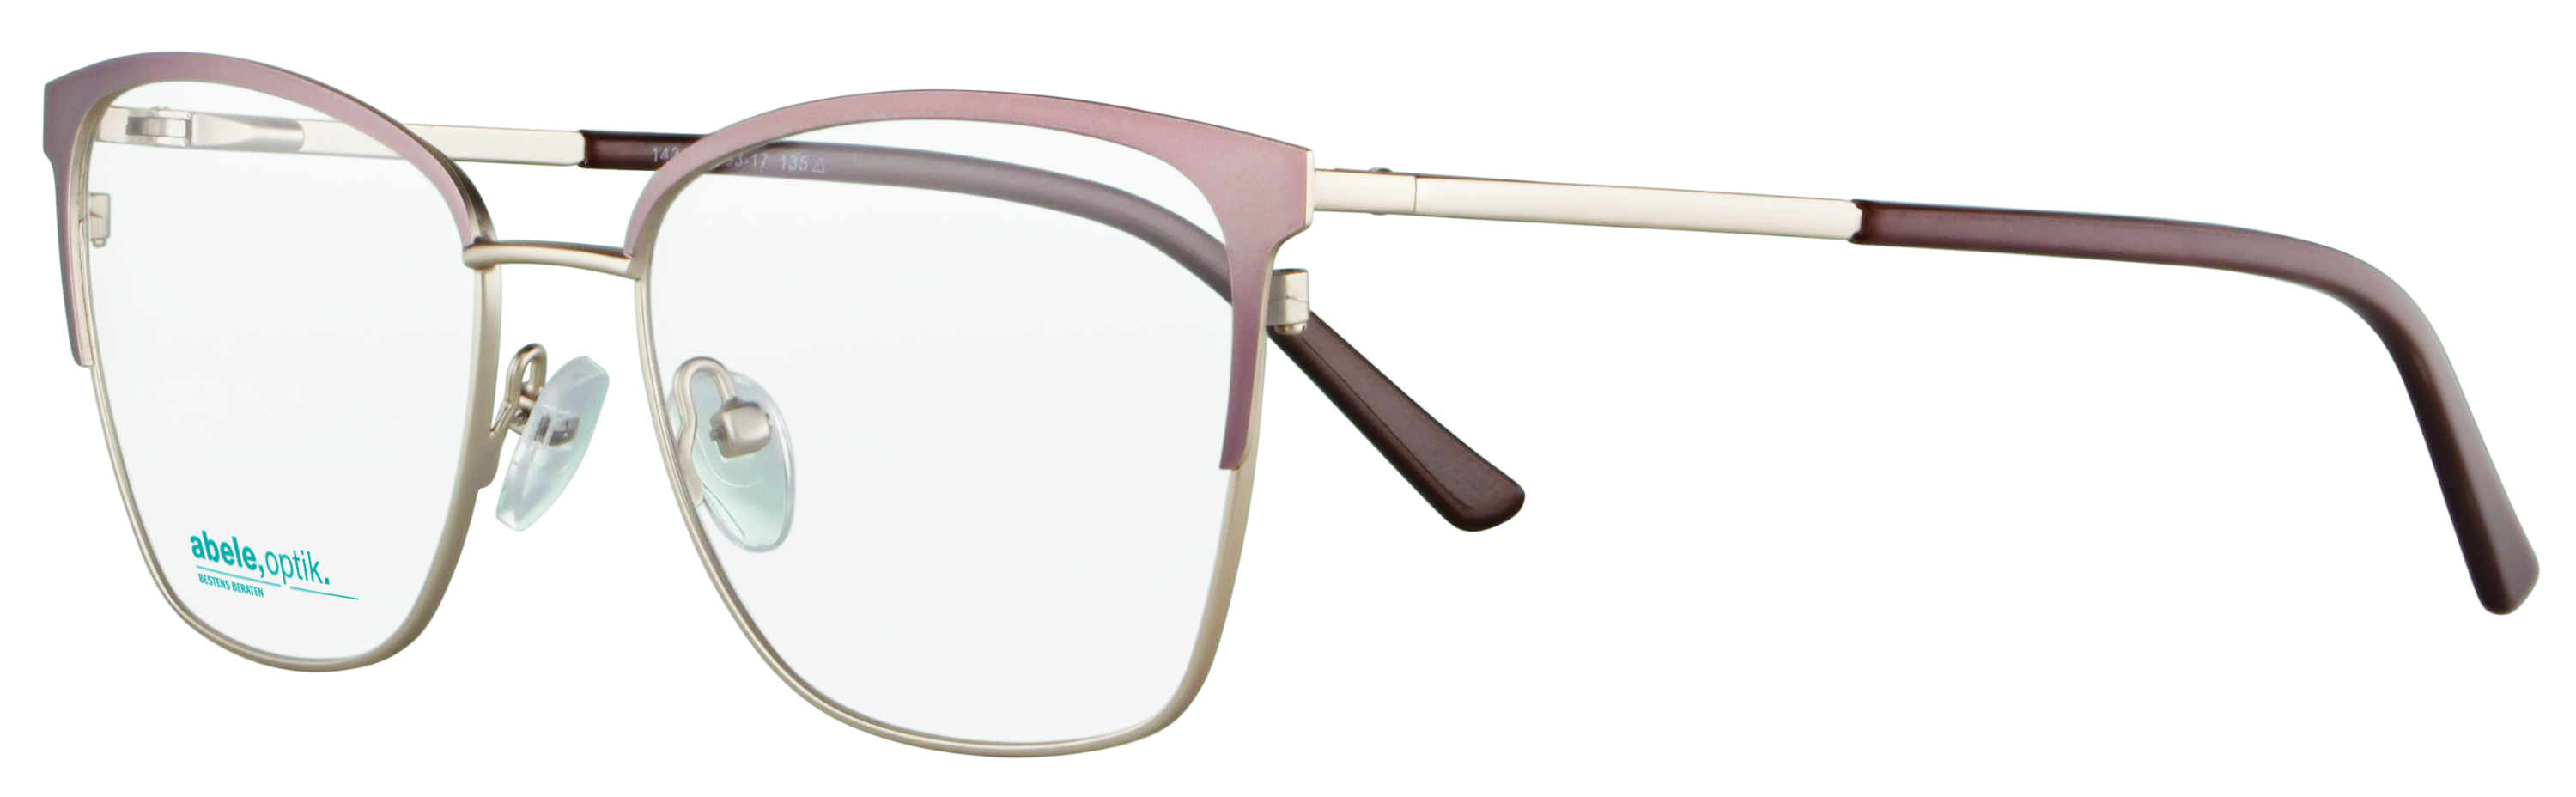 Das Bild zeigt die Korrektionsbrille 143461 von Abele Optik in rosa, gold.